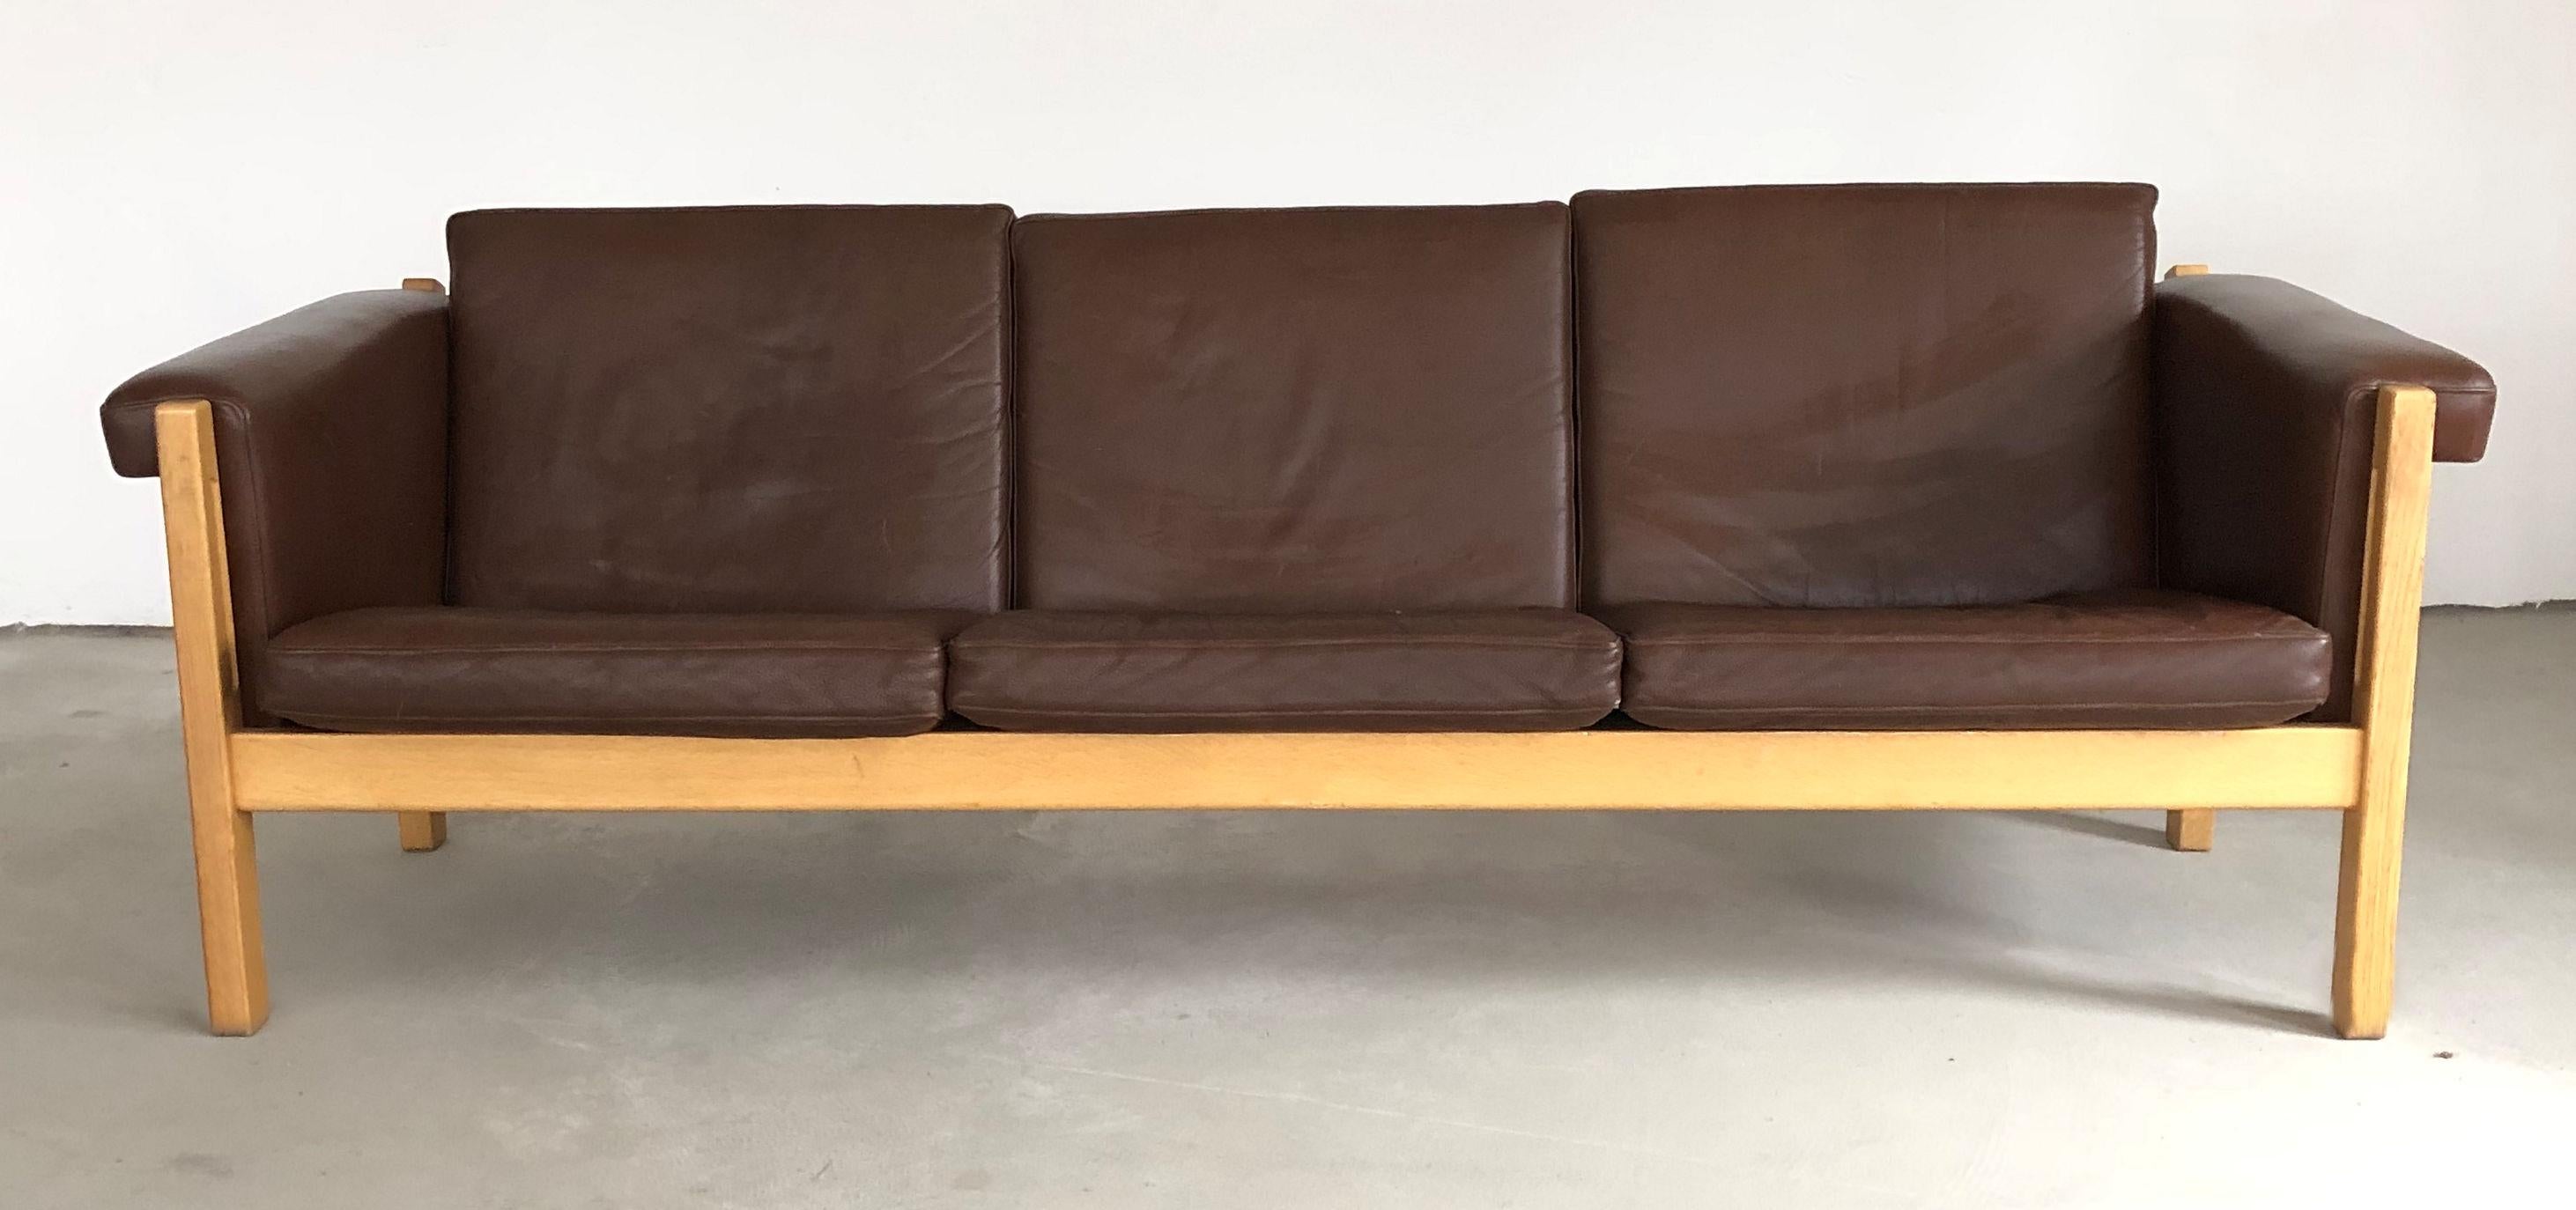 Dreisitziges dänisches Sofa aus Eiche von Hans J. Wegner für GETAMA 

Das selten zu sehende Modell GE-40 mit seinem schlichten, aber eleganten Wegner-Design verfügt über ein stabiles Eichengestell mit kleinen, schlichten, aber eleganten Details